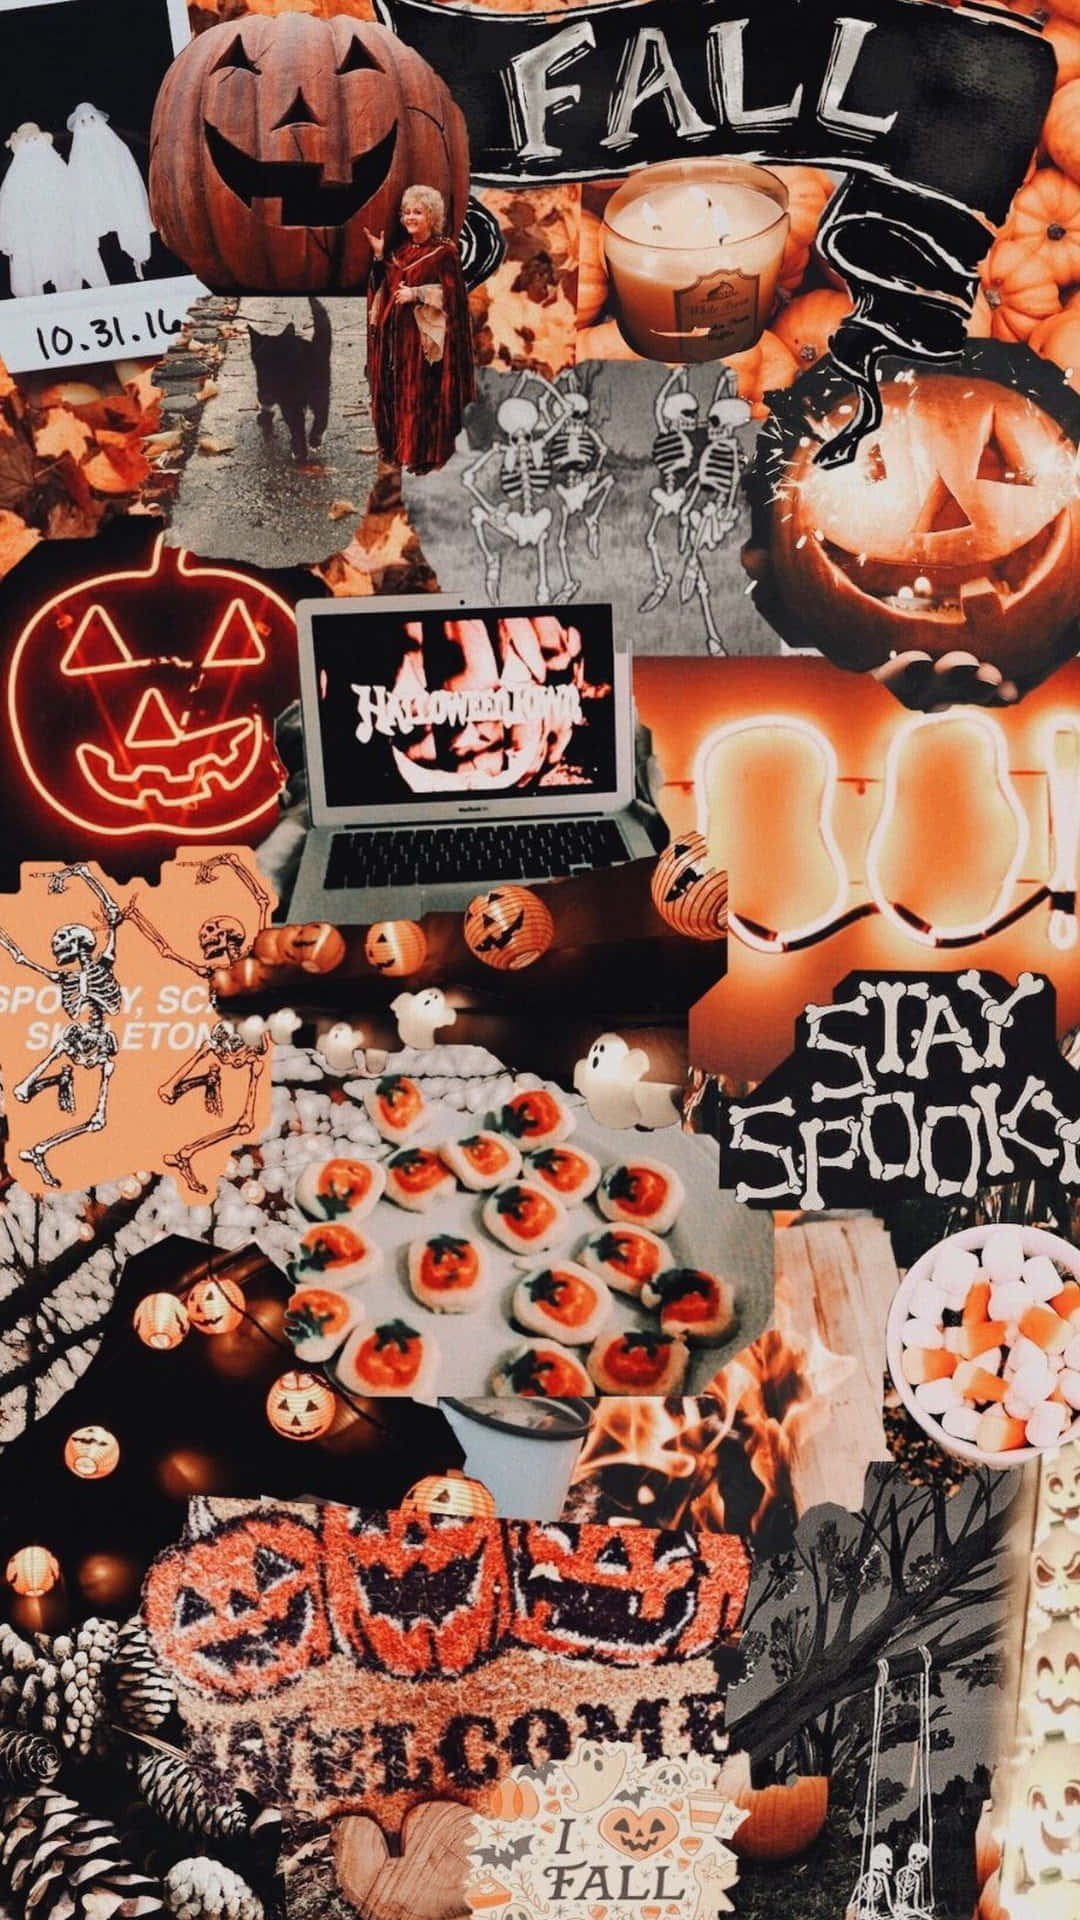 Einecollage Aus Halloween-dekorationen Und Bildern.